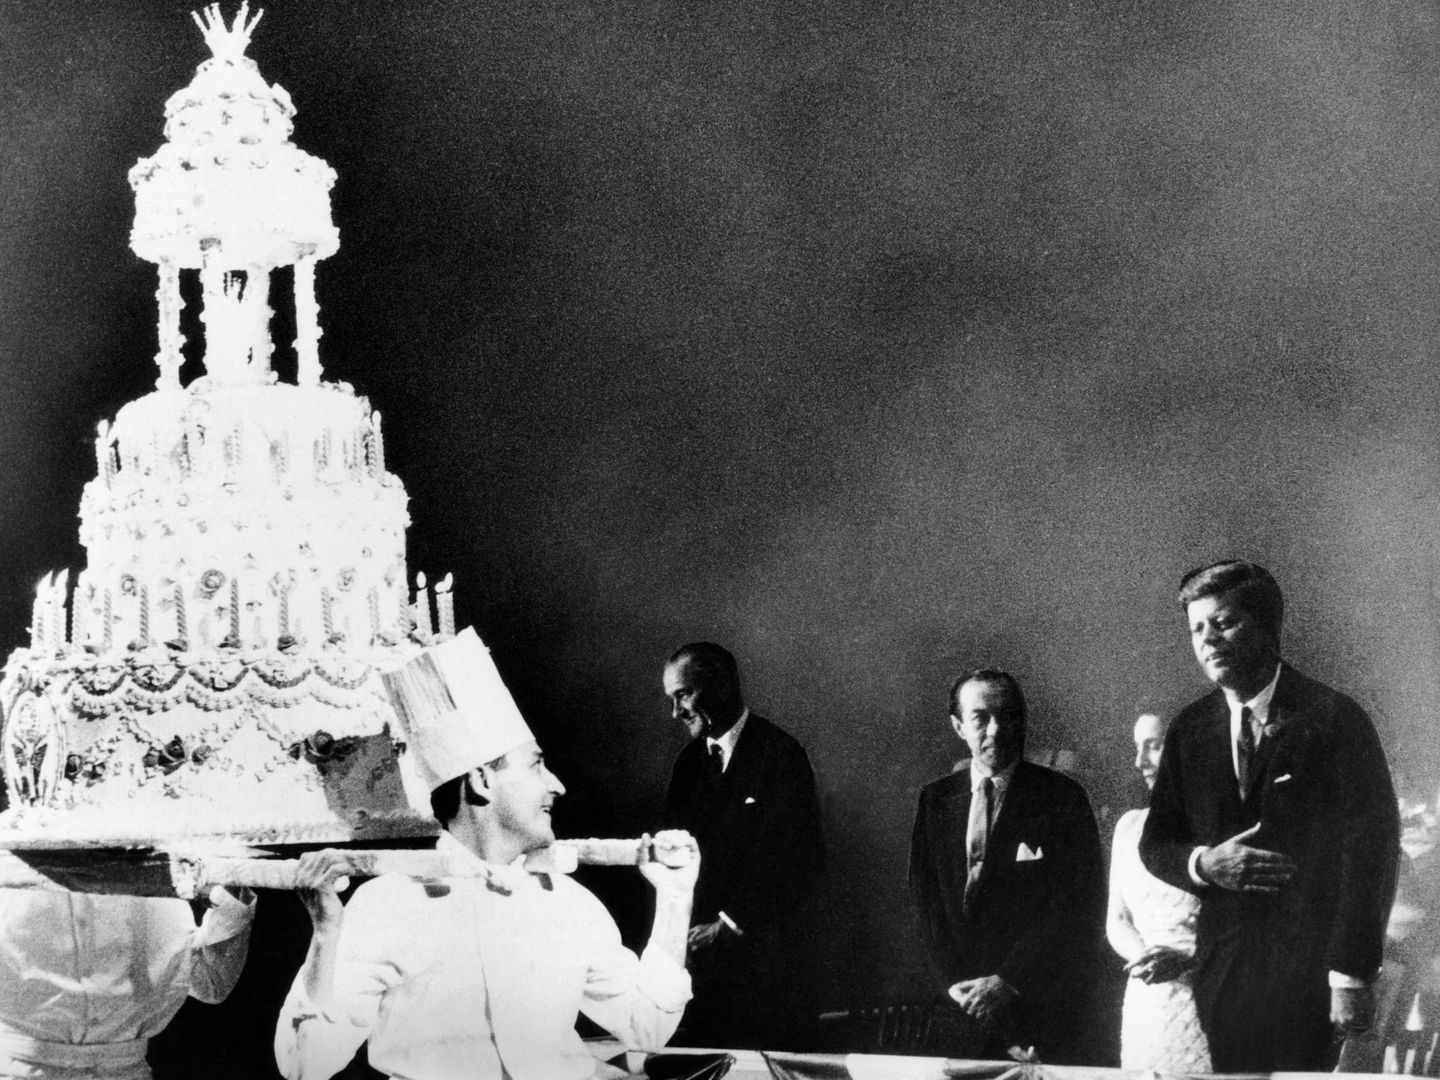  JFK, frente a su enorme tarta de cumpleaños. (CP)